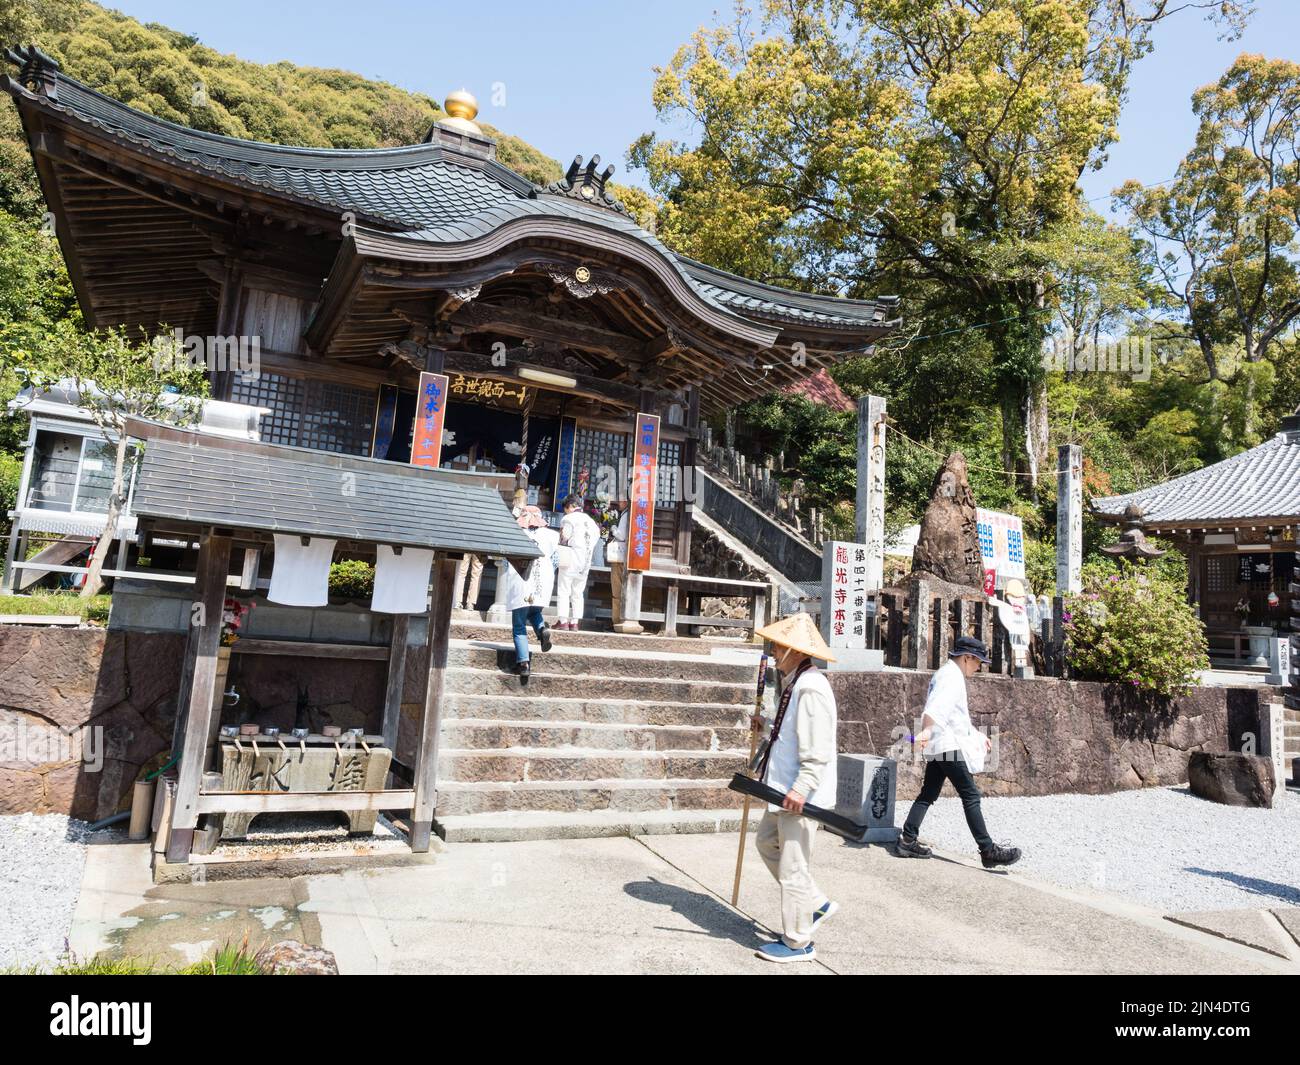 Uwajima, Japon - 8 avril 2018 : pèlerins bouddhistes sur le terrain de Ryukoji, temple numéro 41 du pèlerinage de Shikoku Banque D'Images